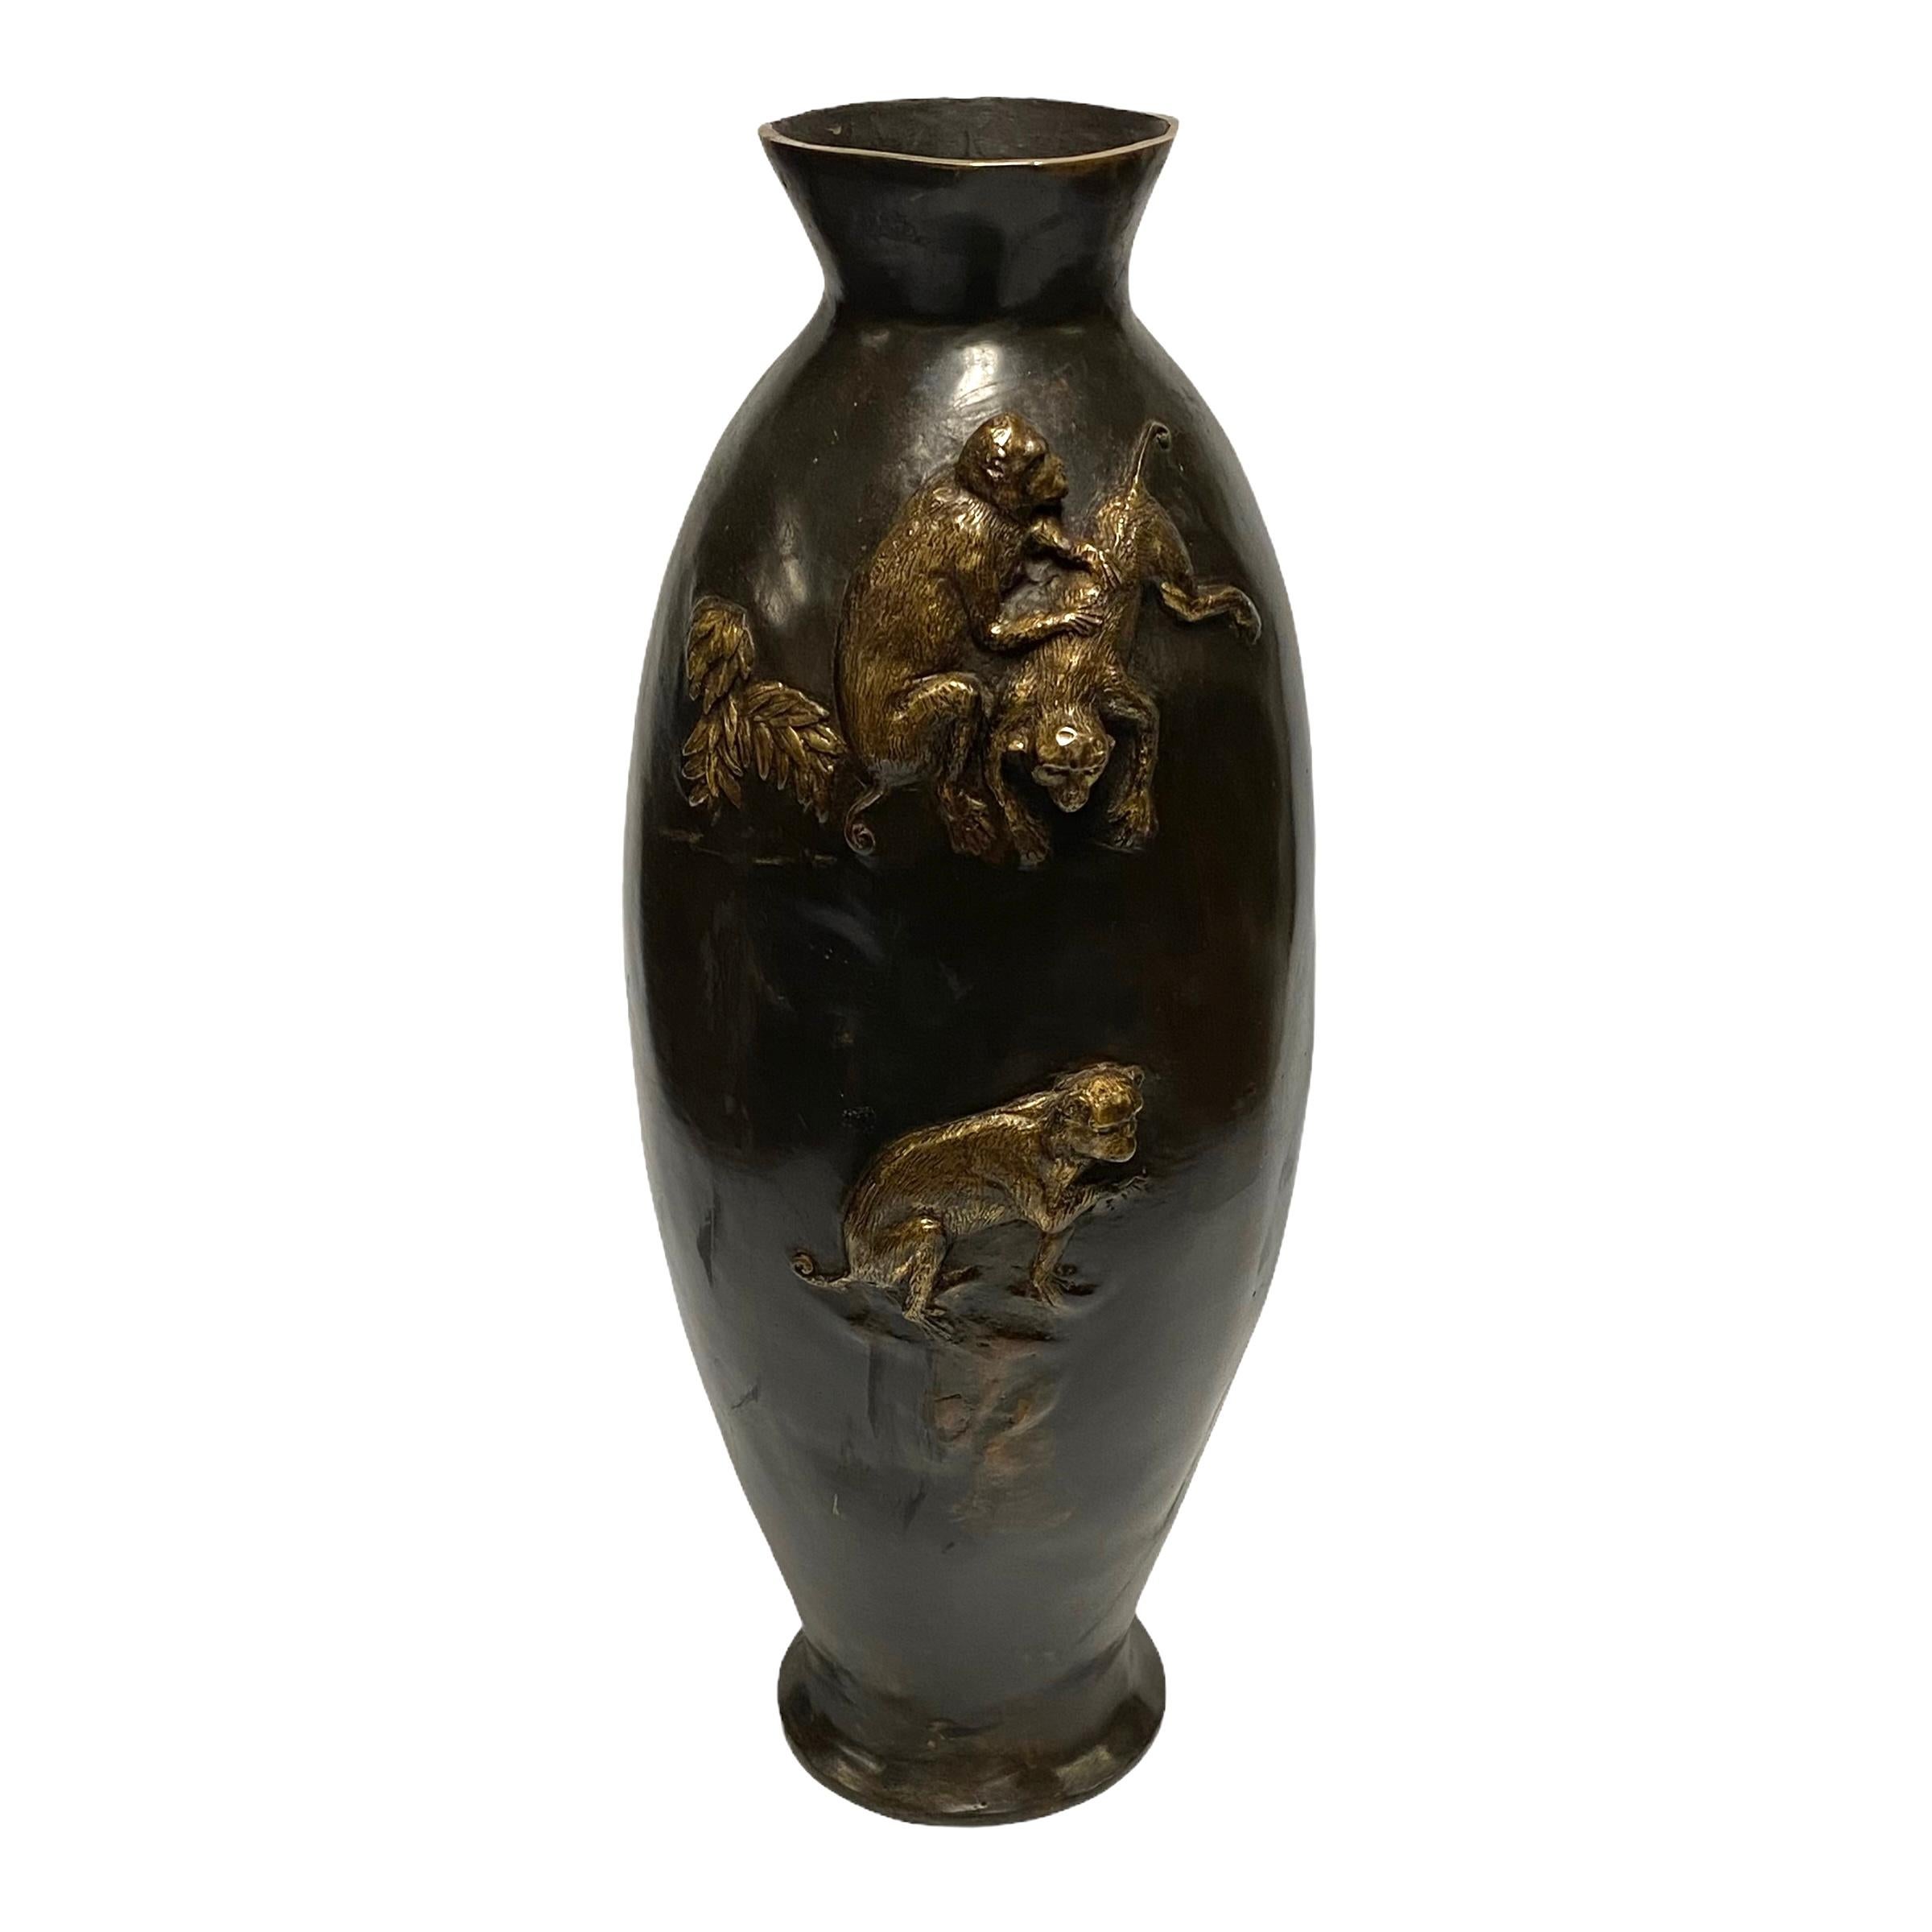 Asian bronze vase with Monkeys in Relief.